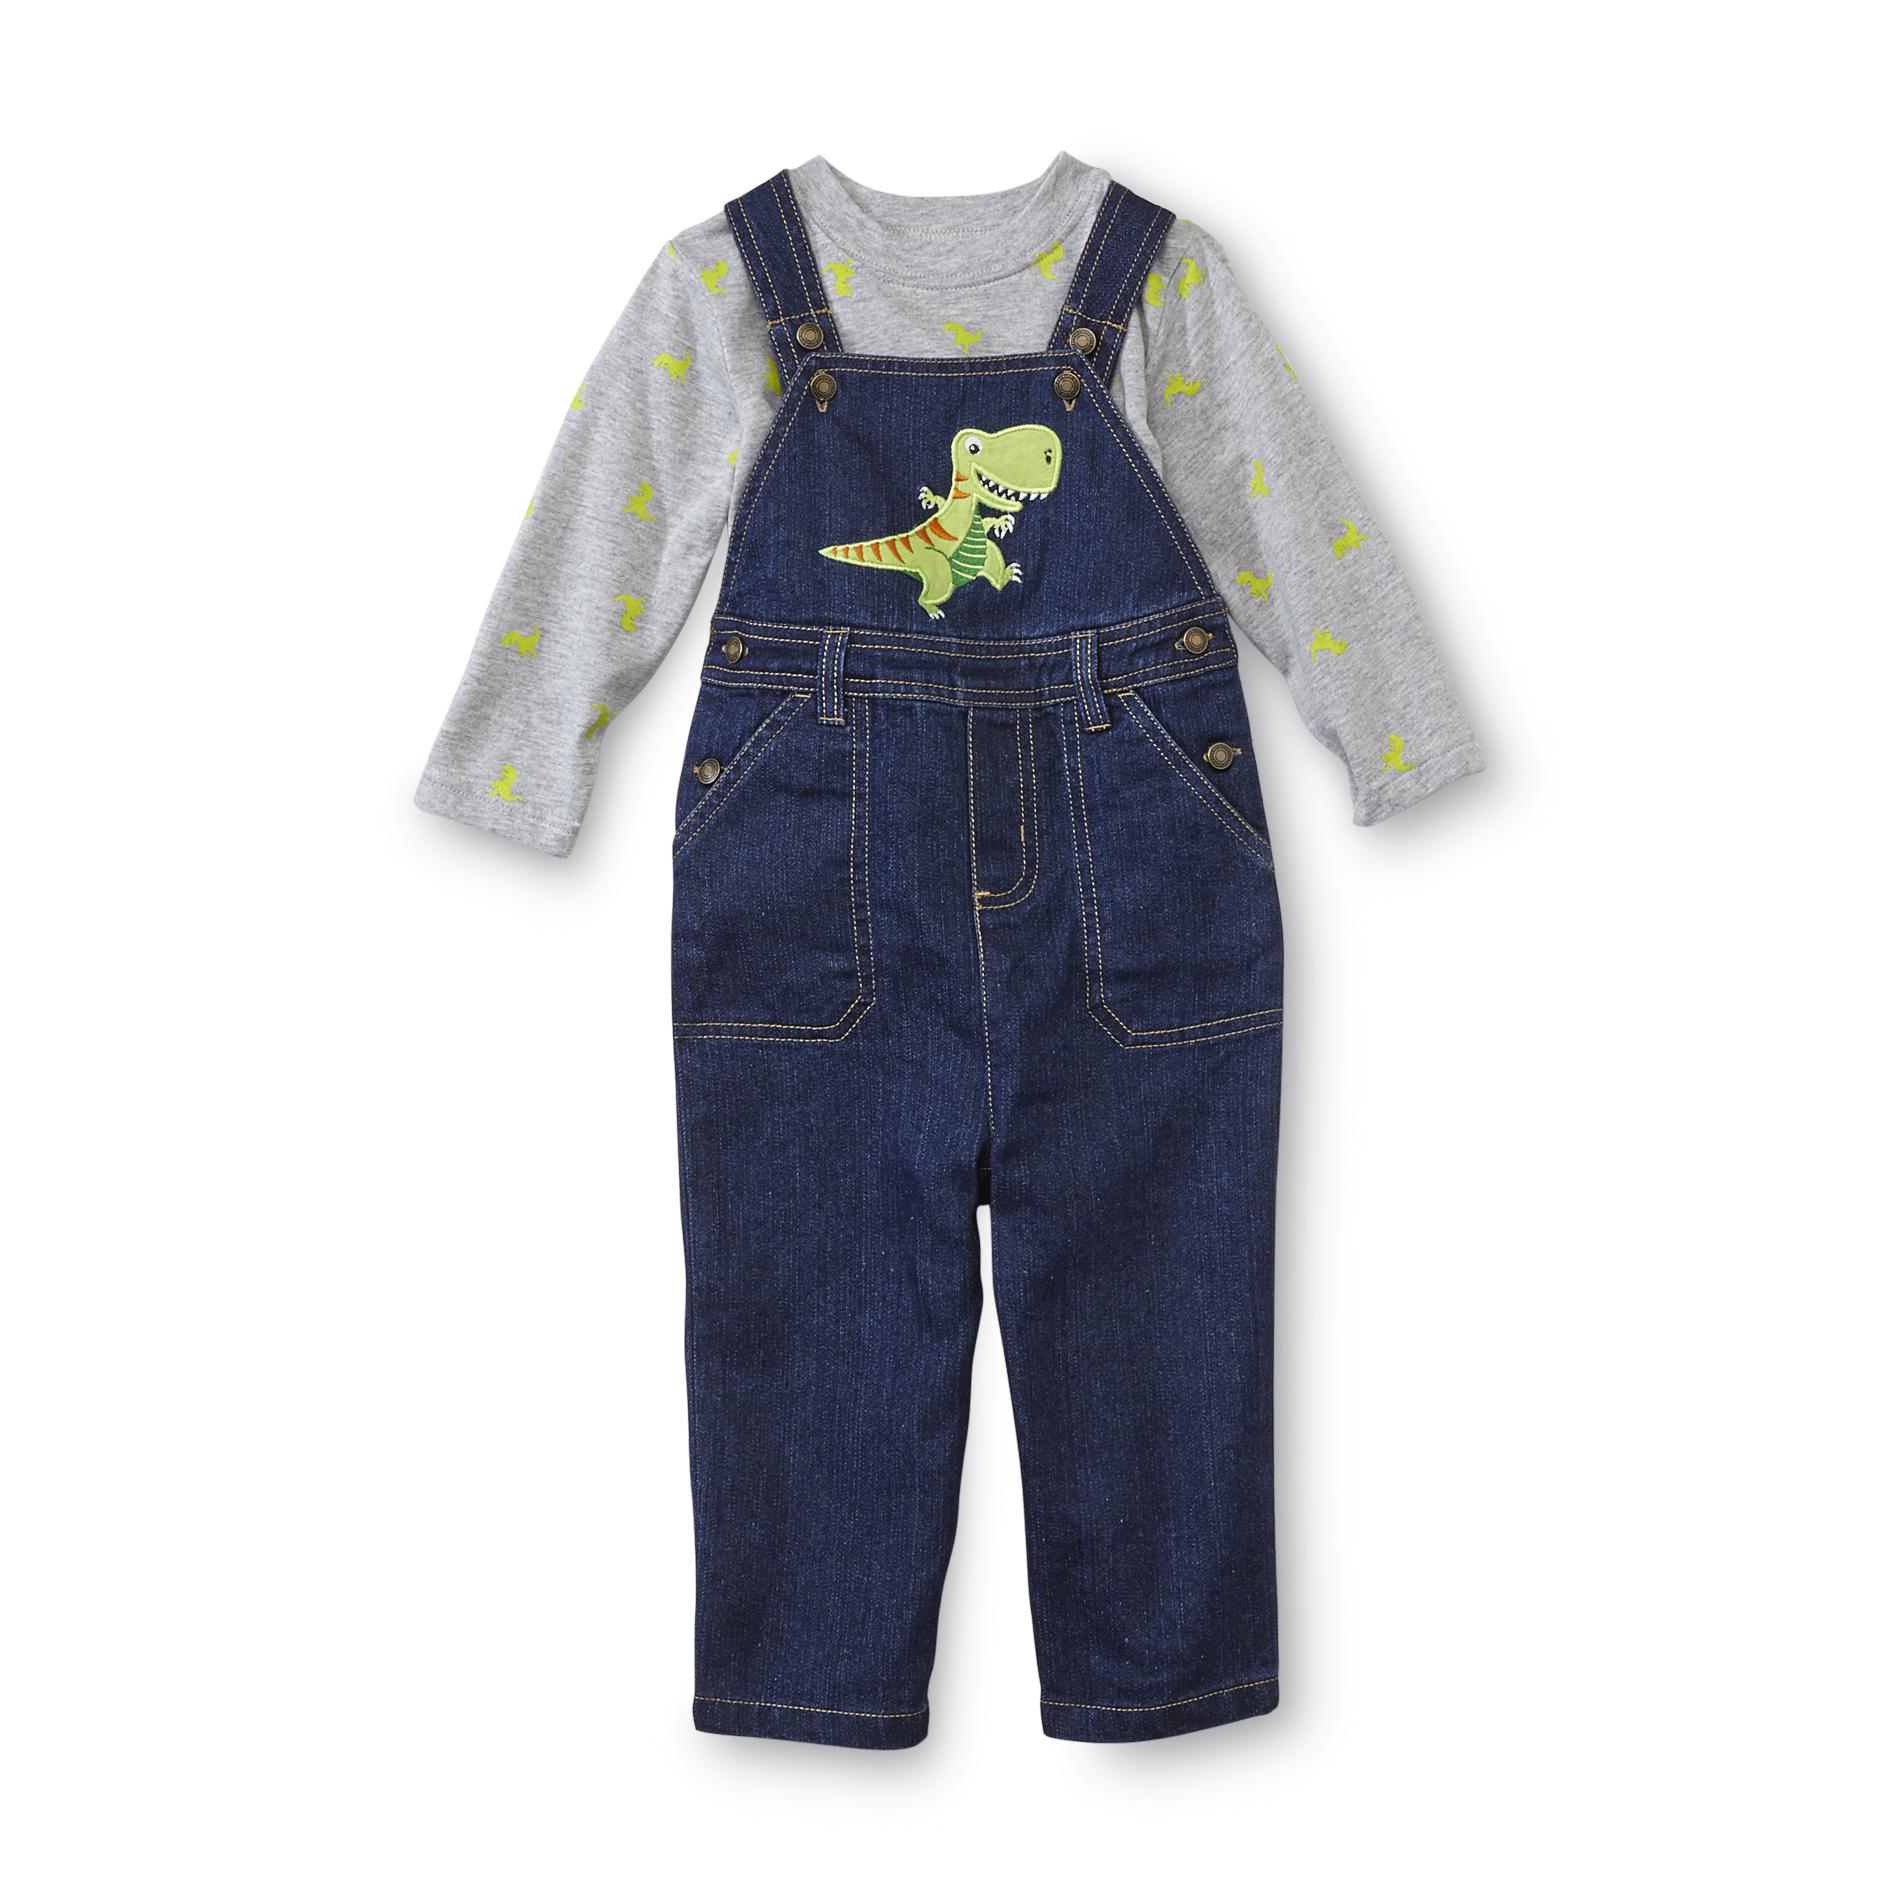 WonderKids Infant Boy's Shirt & Overalls - T-Rex